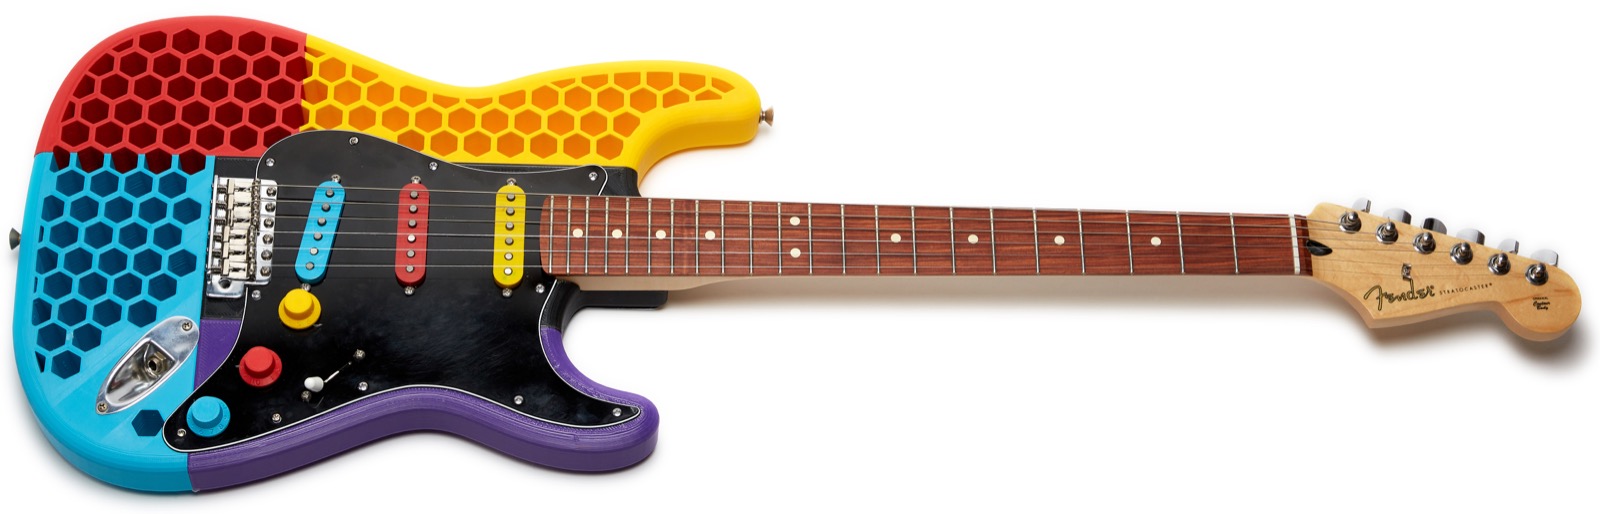 GAD-3D-Printed-Guitar-Strat-TopFull.jpg